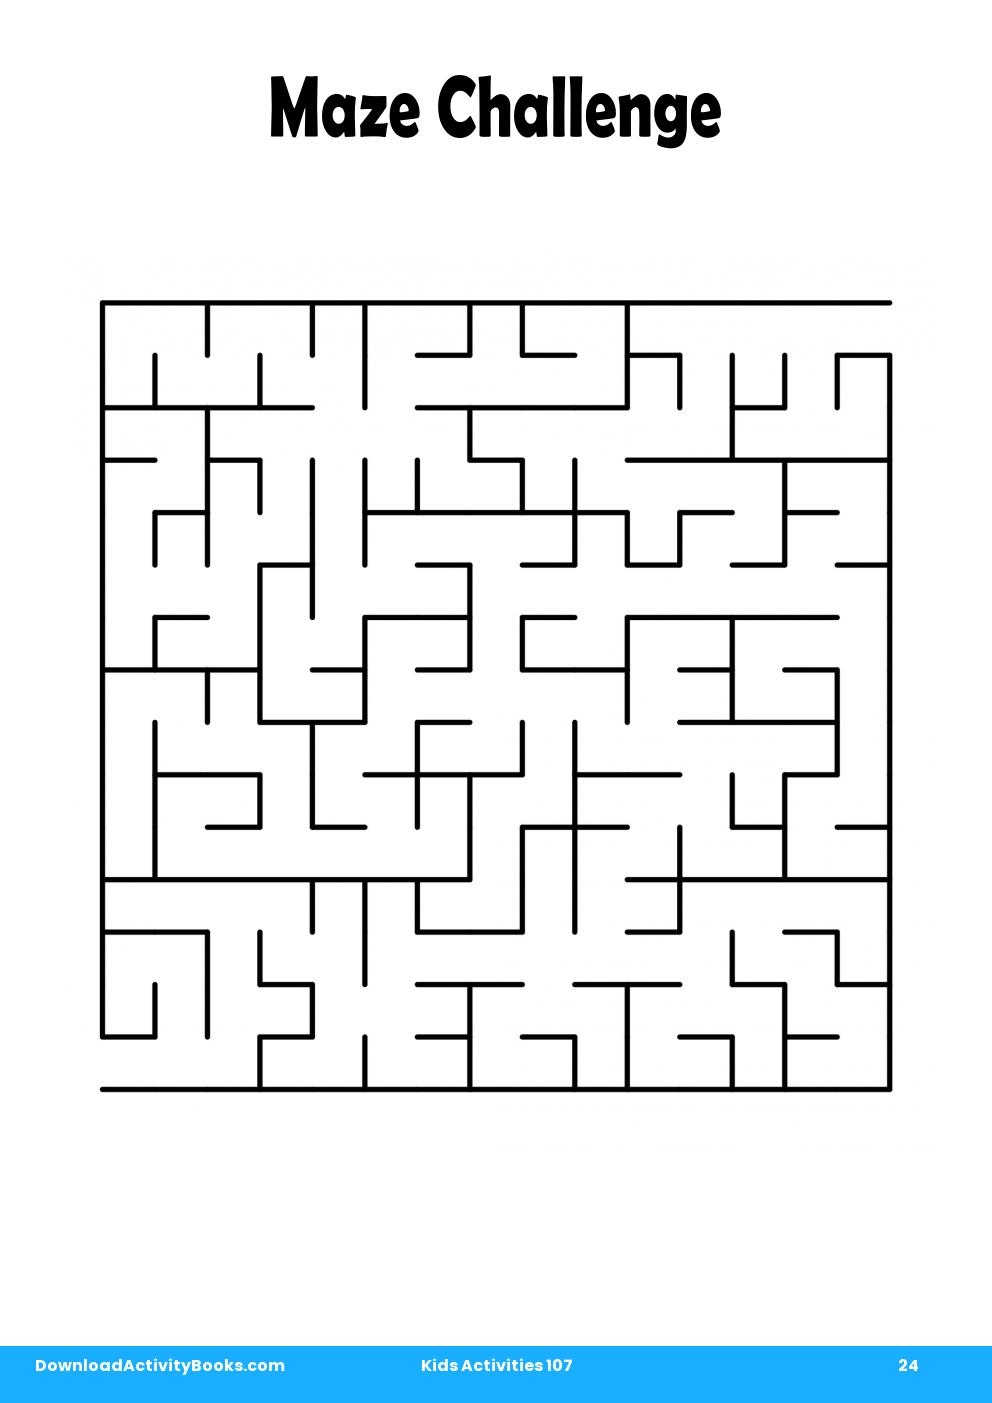 Maze Challenge in Kids Activities 107